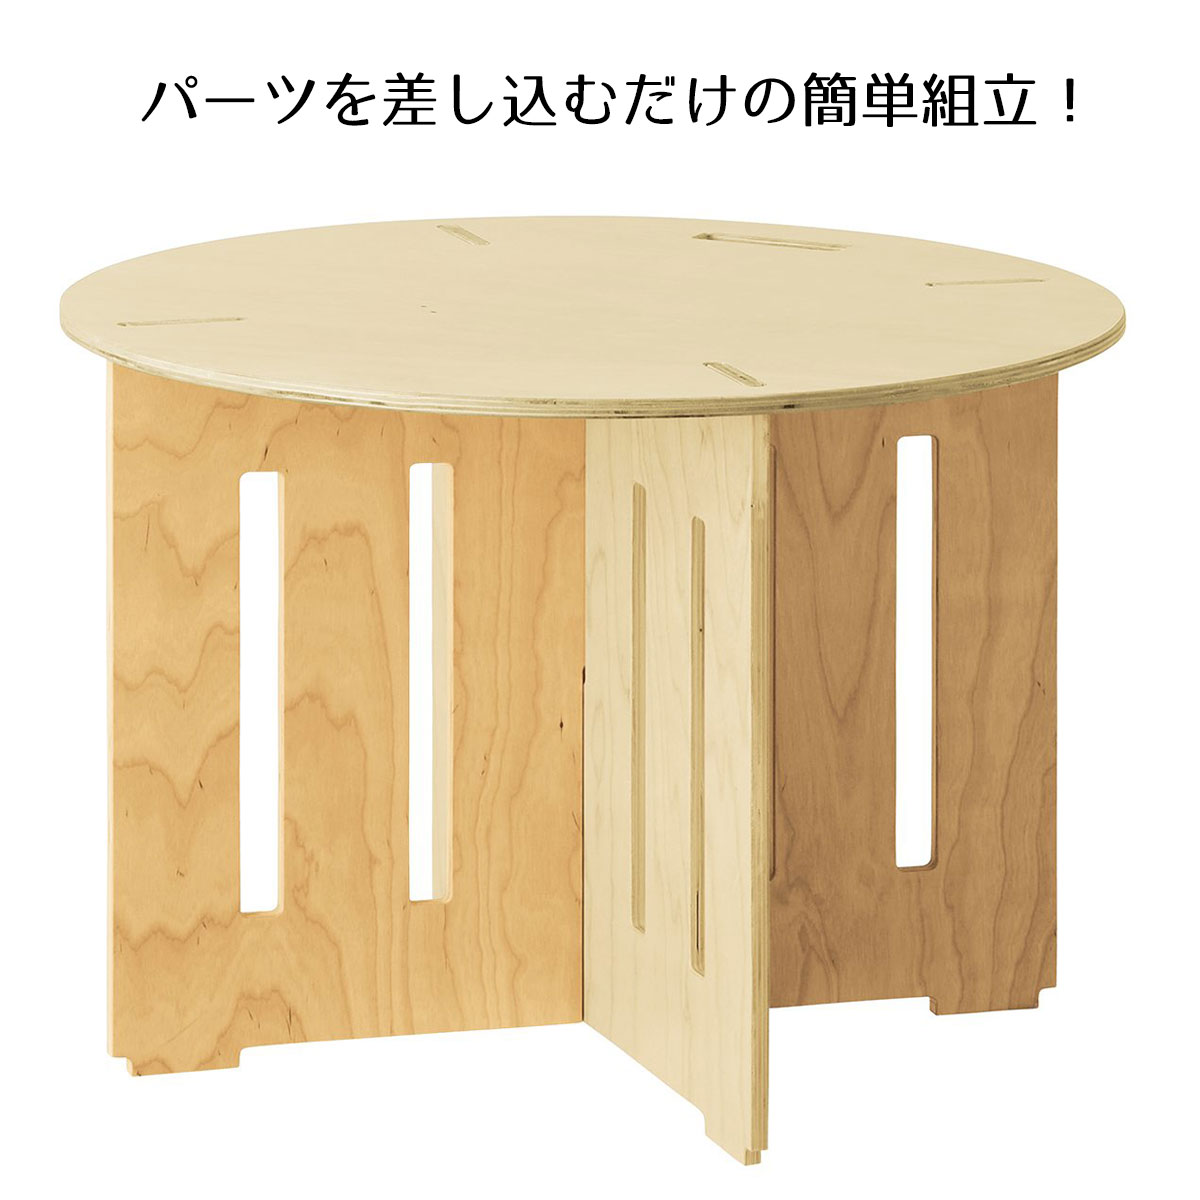 木製簡易テーブル 円形タイプ 小 1台差込式のパーツ構成により簡単組立。未使用時にはコンパクトに収納 ...